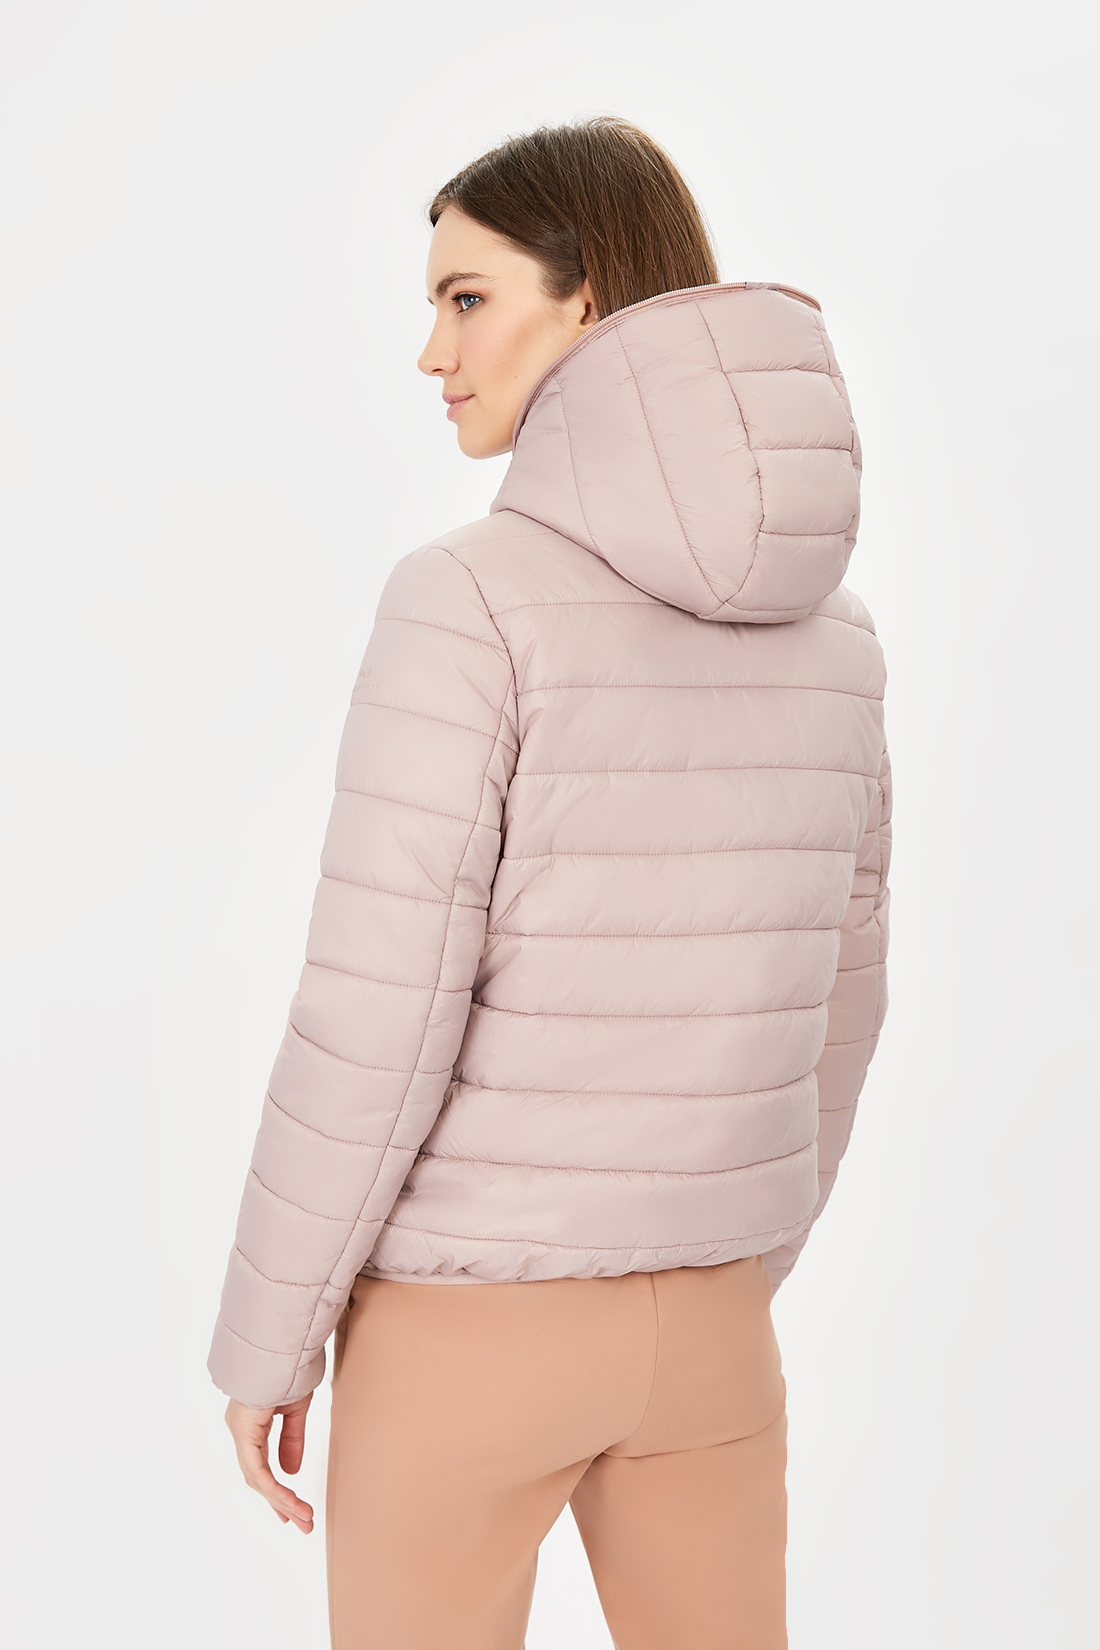 Куртка (арт. baon B031206), размер XXL, цвет розовый Куртка (арт. baon B031206) - фото 2